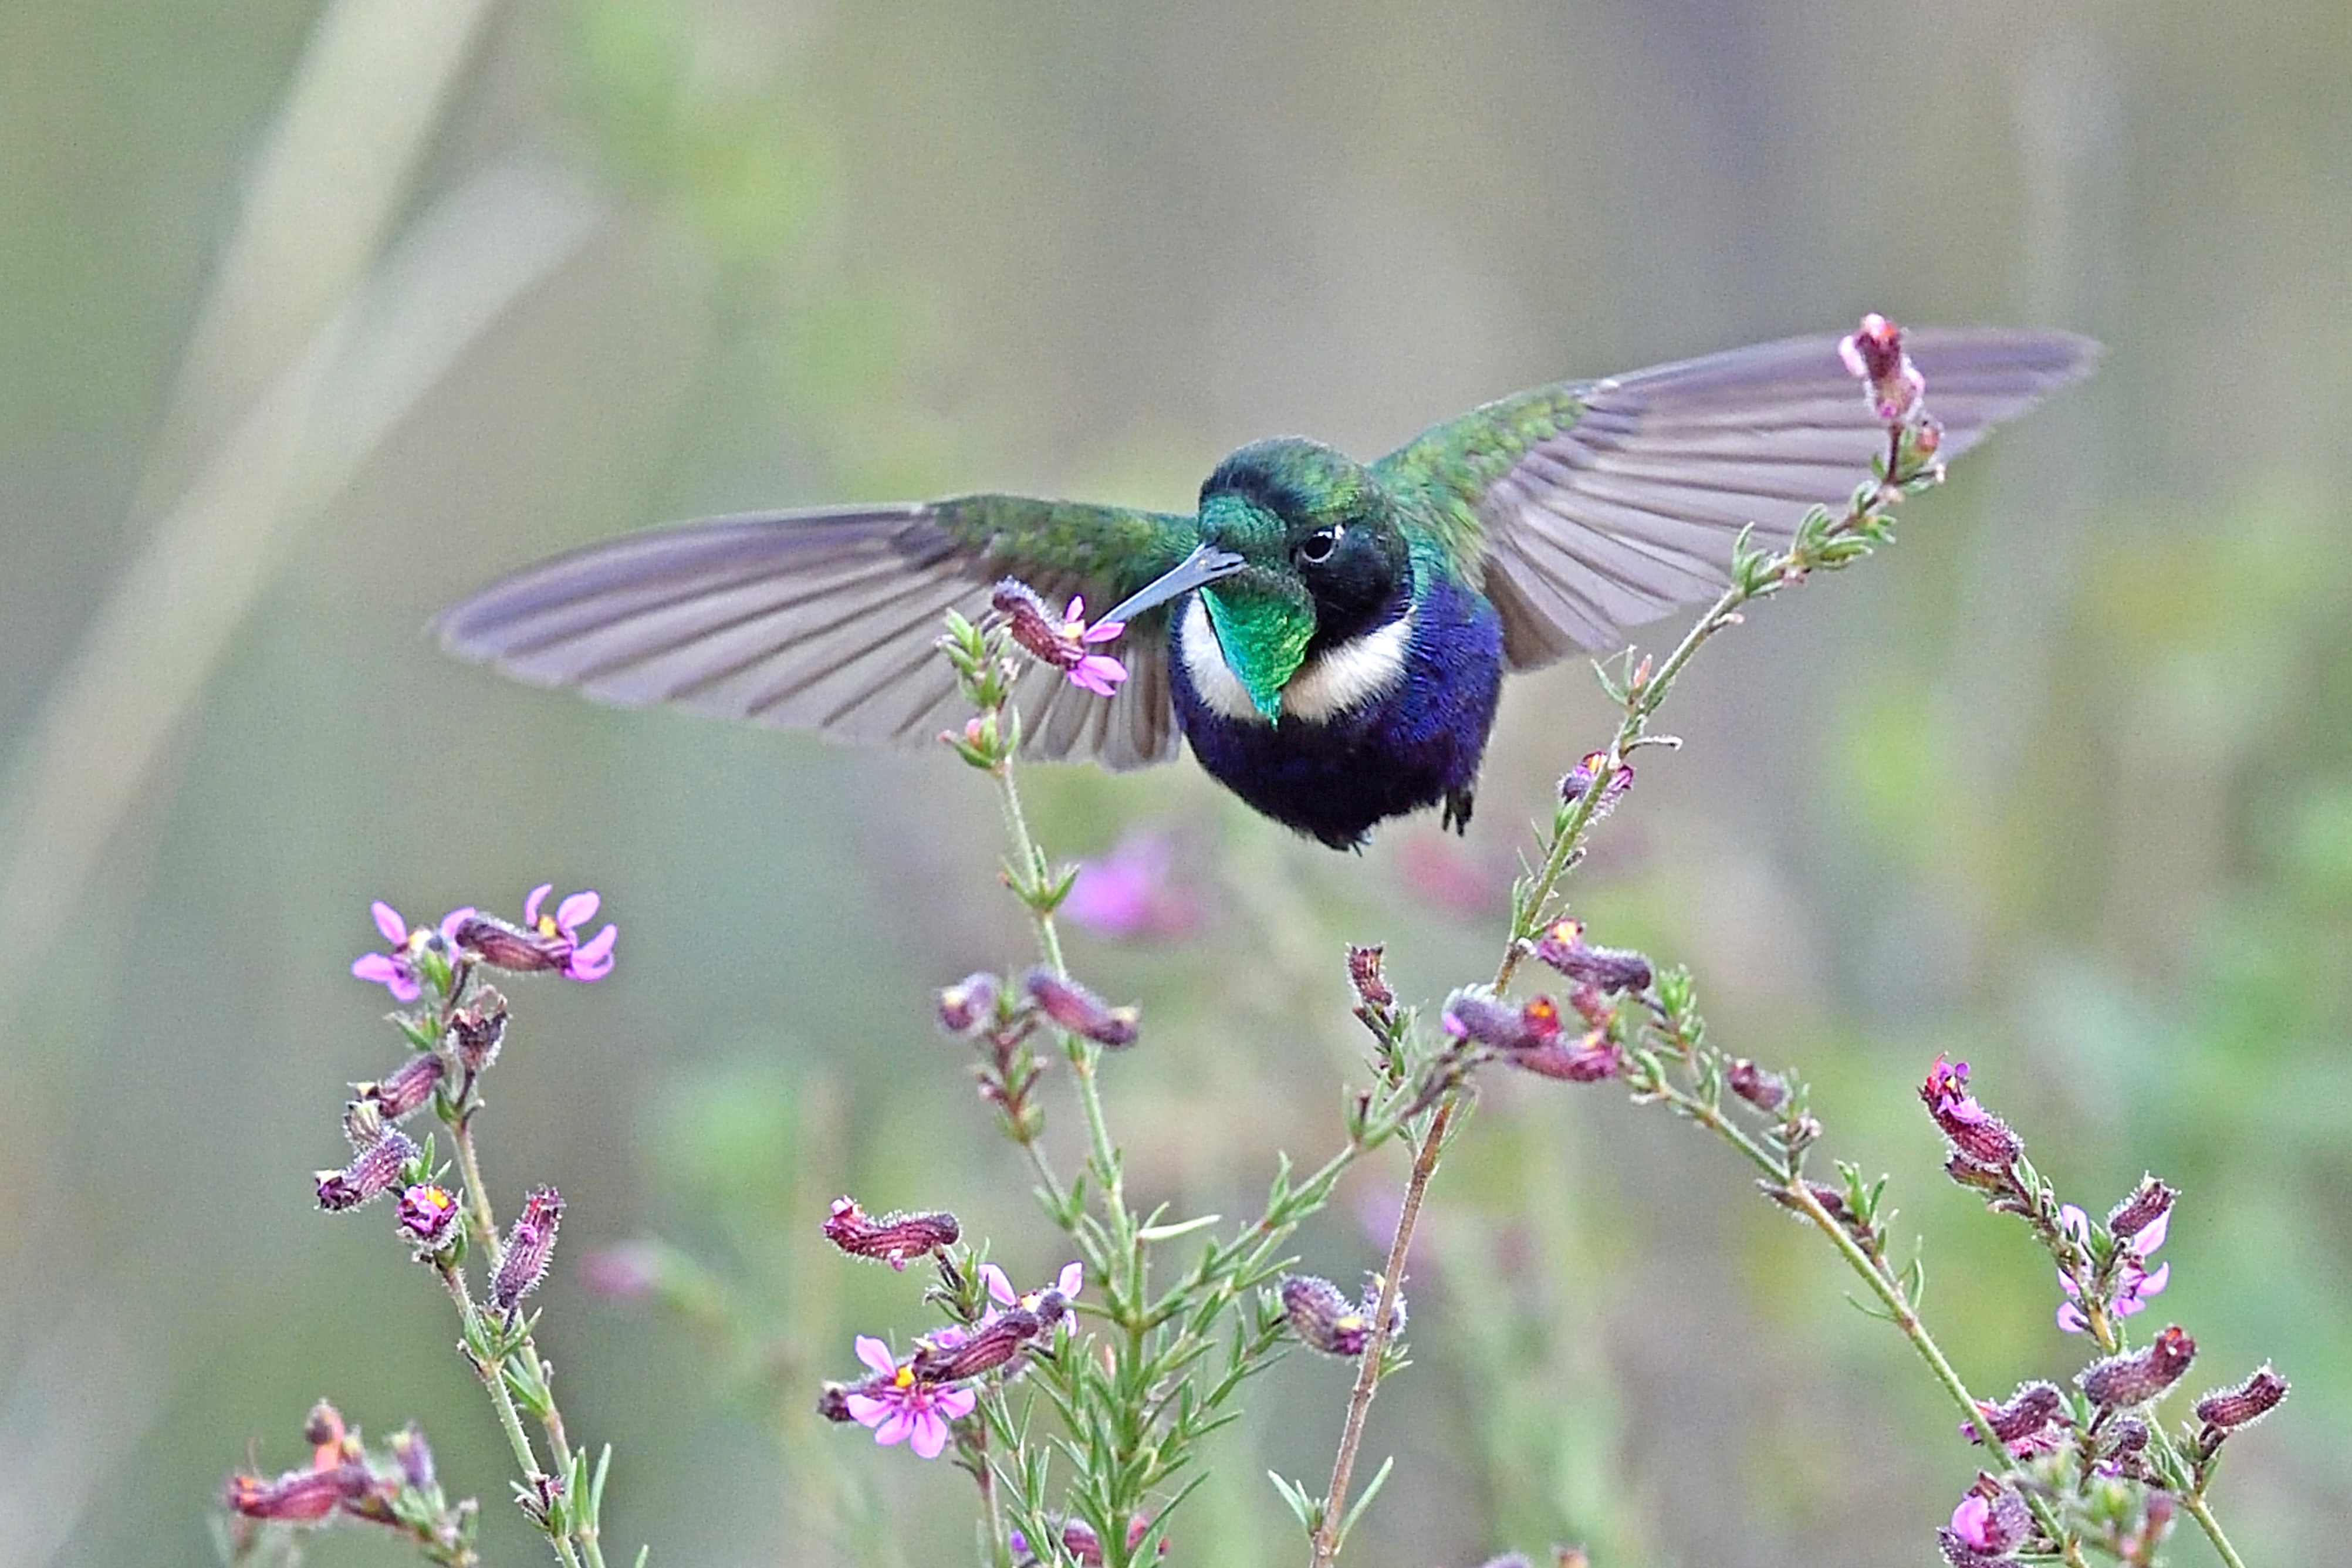 O livro de Ribenboim registra 84 espécies, incluindo o Beija-flor-de-gravata-verde